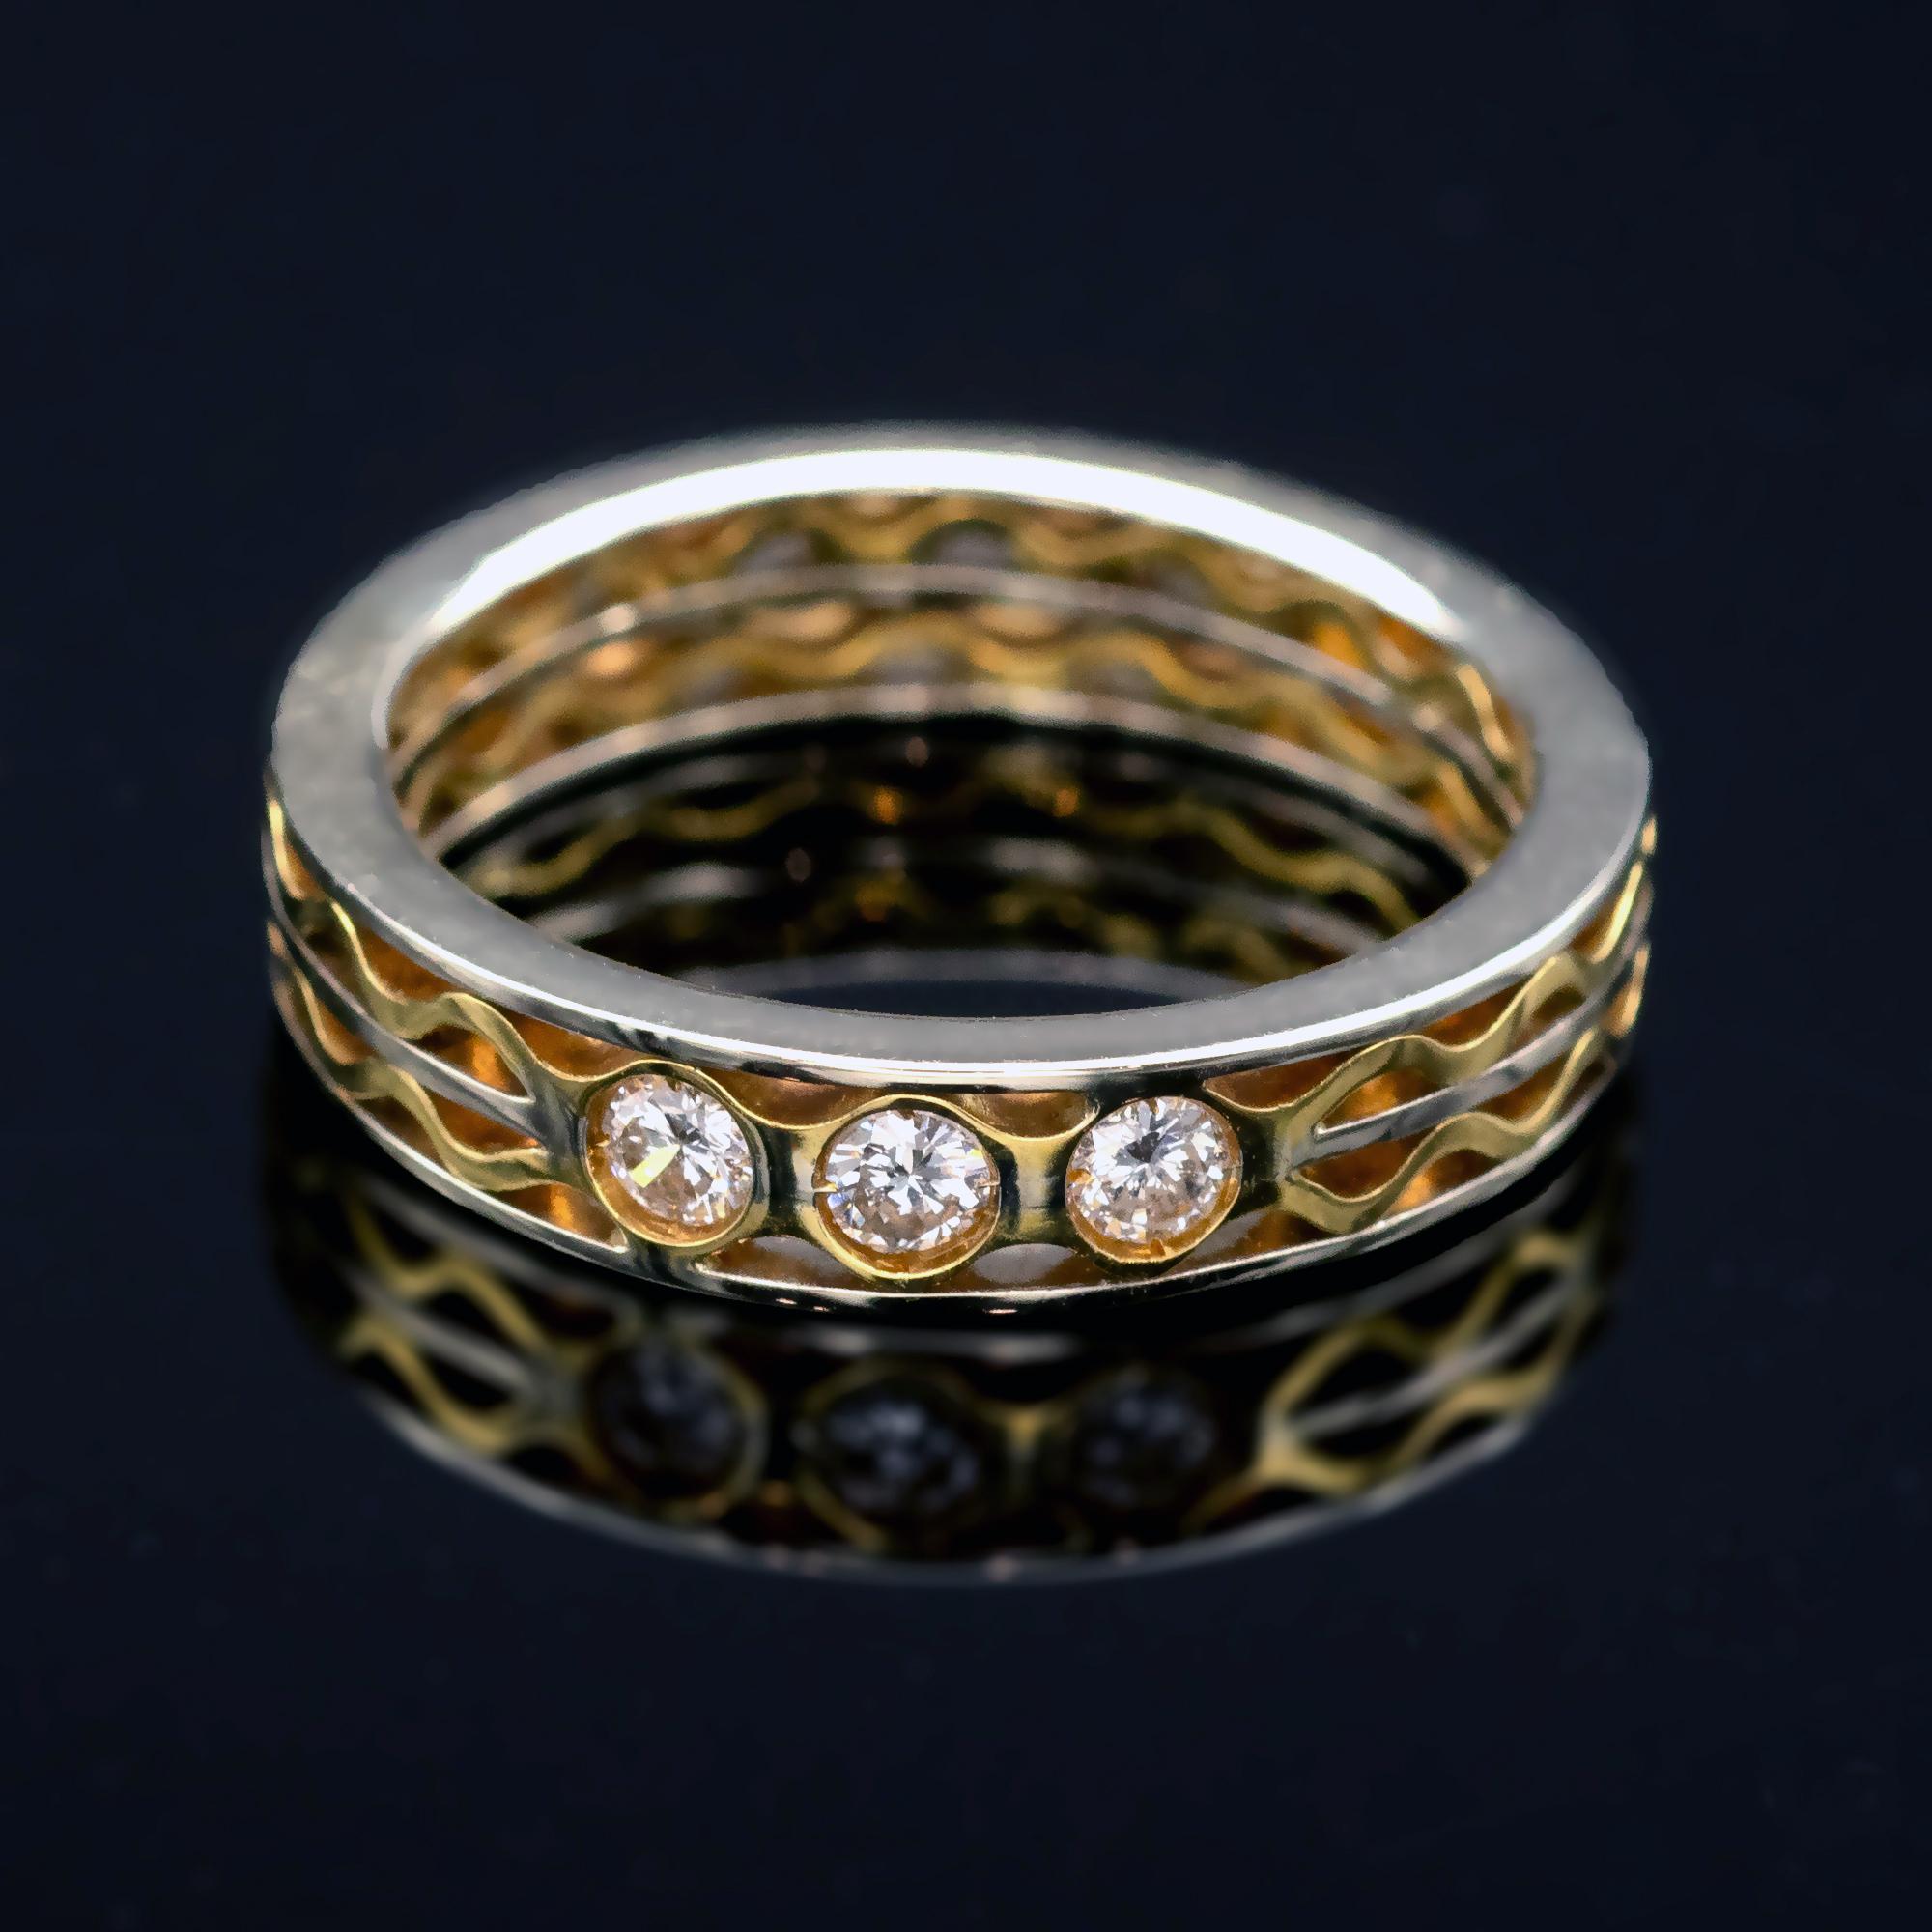 Exquise alliance contemporaine faite à la main. Deux tons d'or 18 carats dans un motif de vague mettant en valeur trois diamants ( Approx. 0.20 carat- F/G VS ). Excellente fabrication, design moderne ; le résultat est saisissant.

Détails : 
Taille